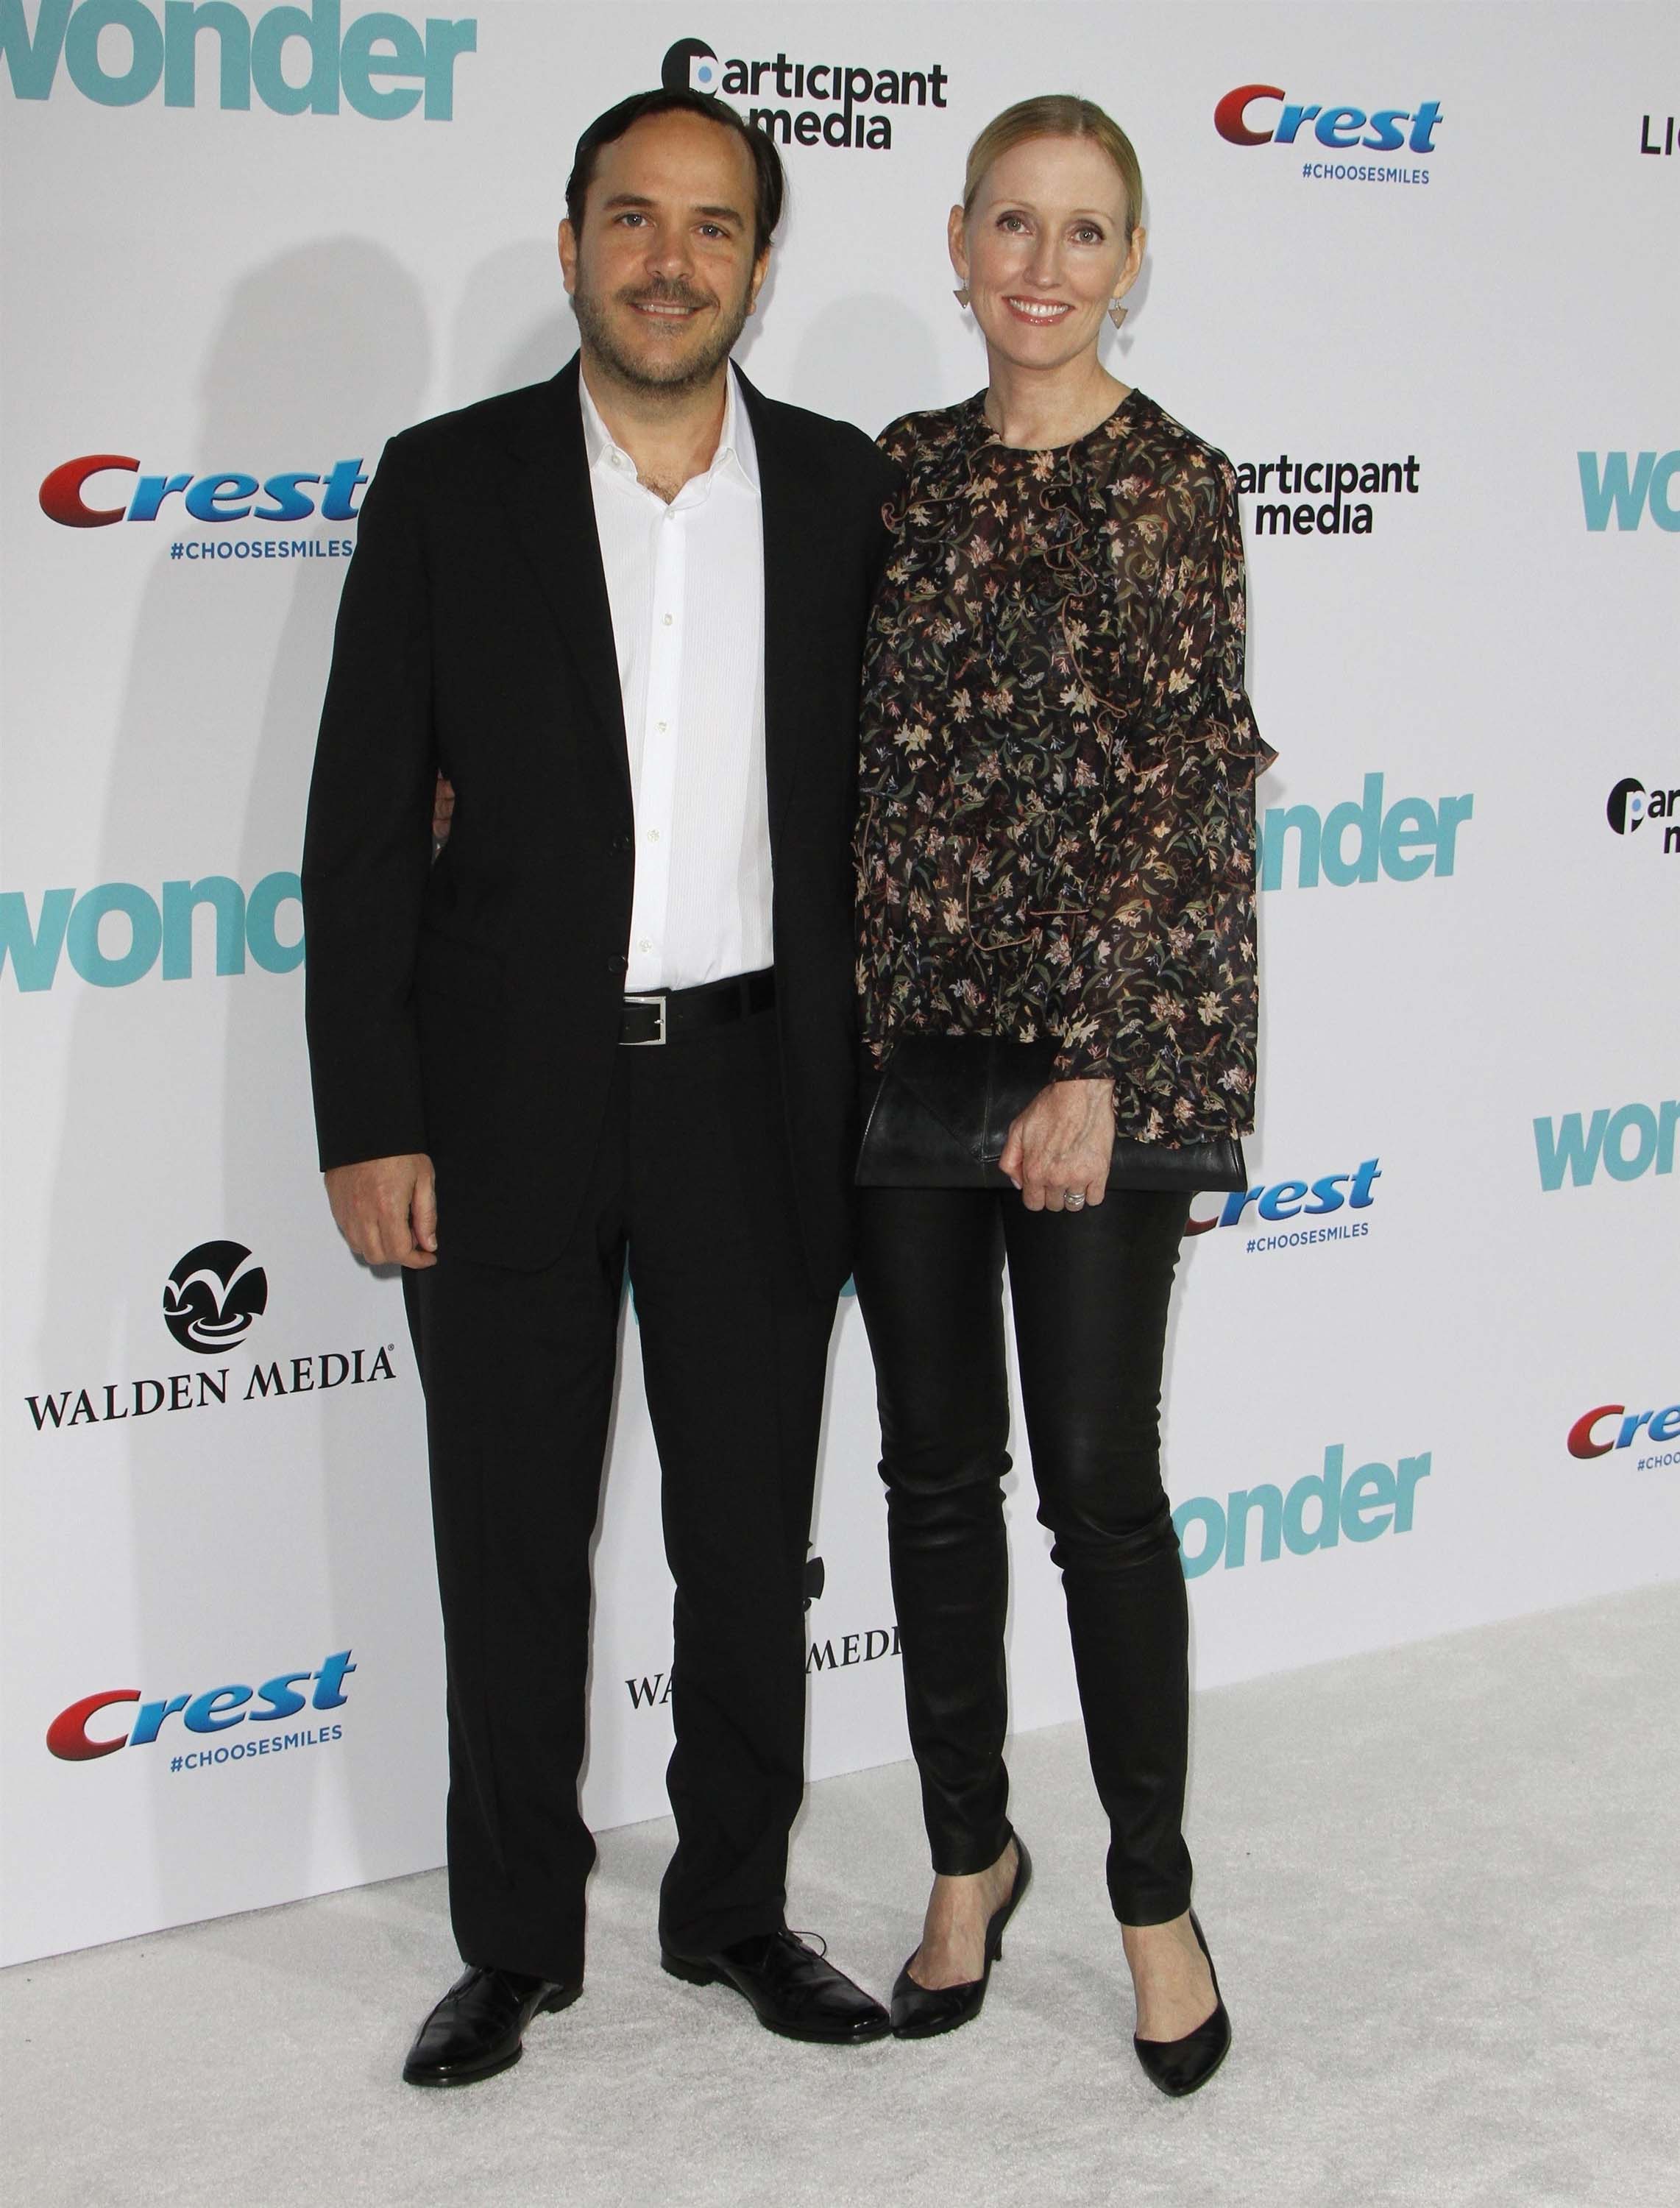 Janel Moloney attends Wonder film premiere